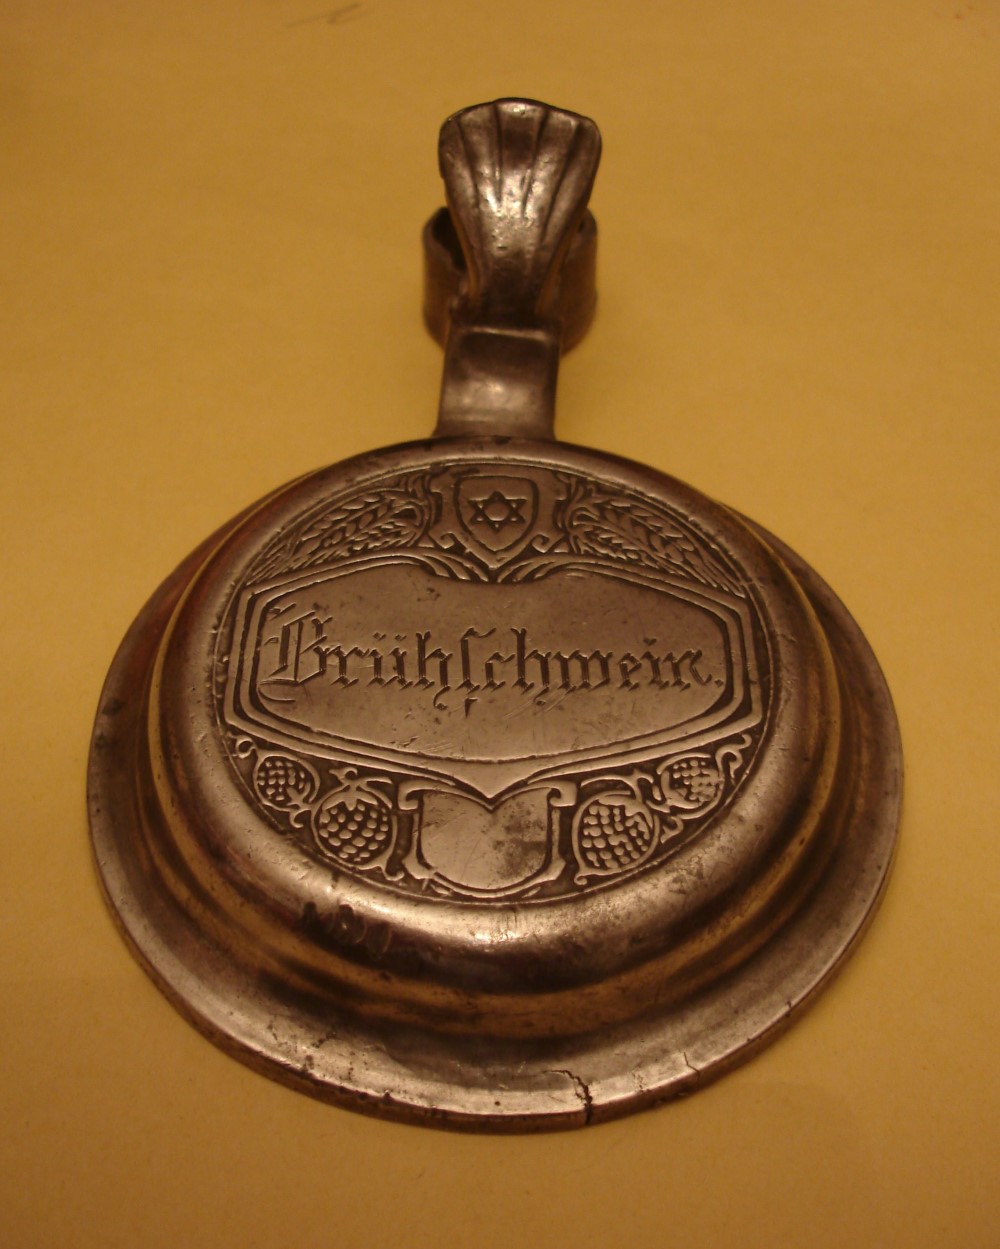 Bierkrugdeckel aus der Zeit um 1880 mit dem eingravierten Namen „Brhschwein“ des (vermutlichen) jdischen Besitzers und drber der Davidstern, das Symbol des Judentums.